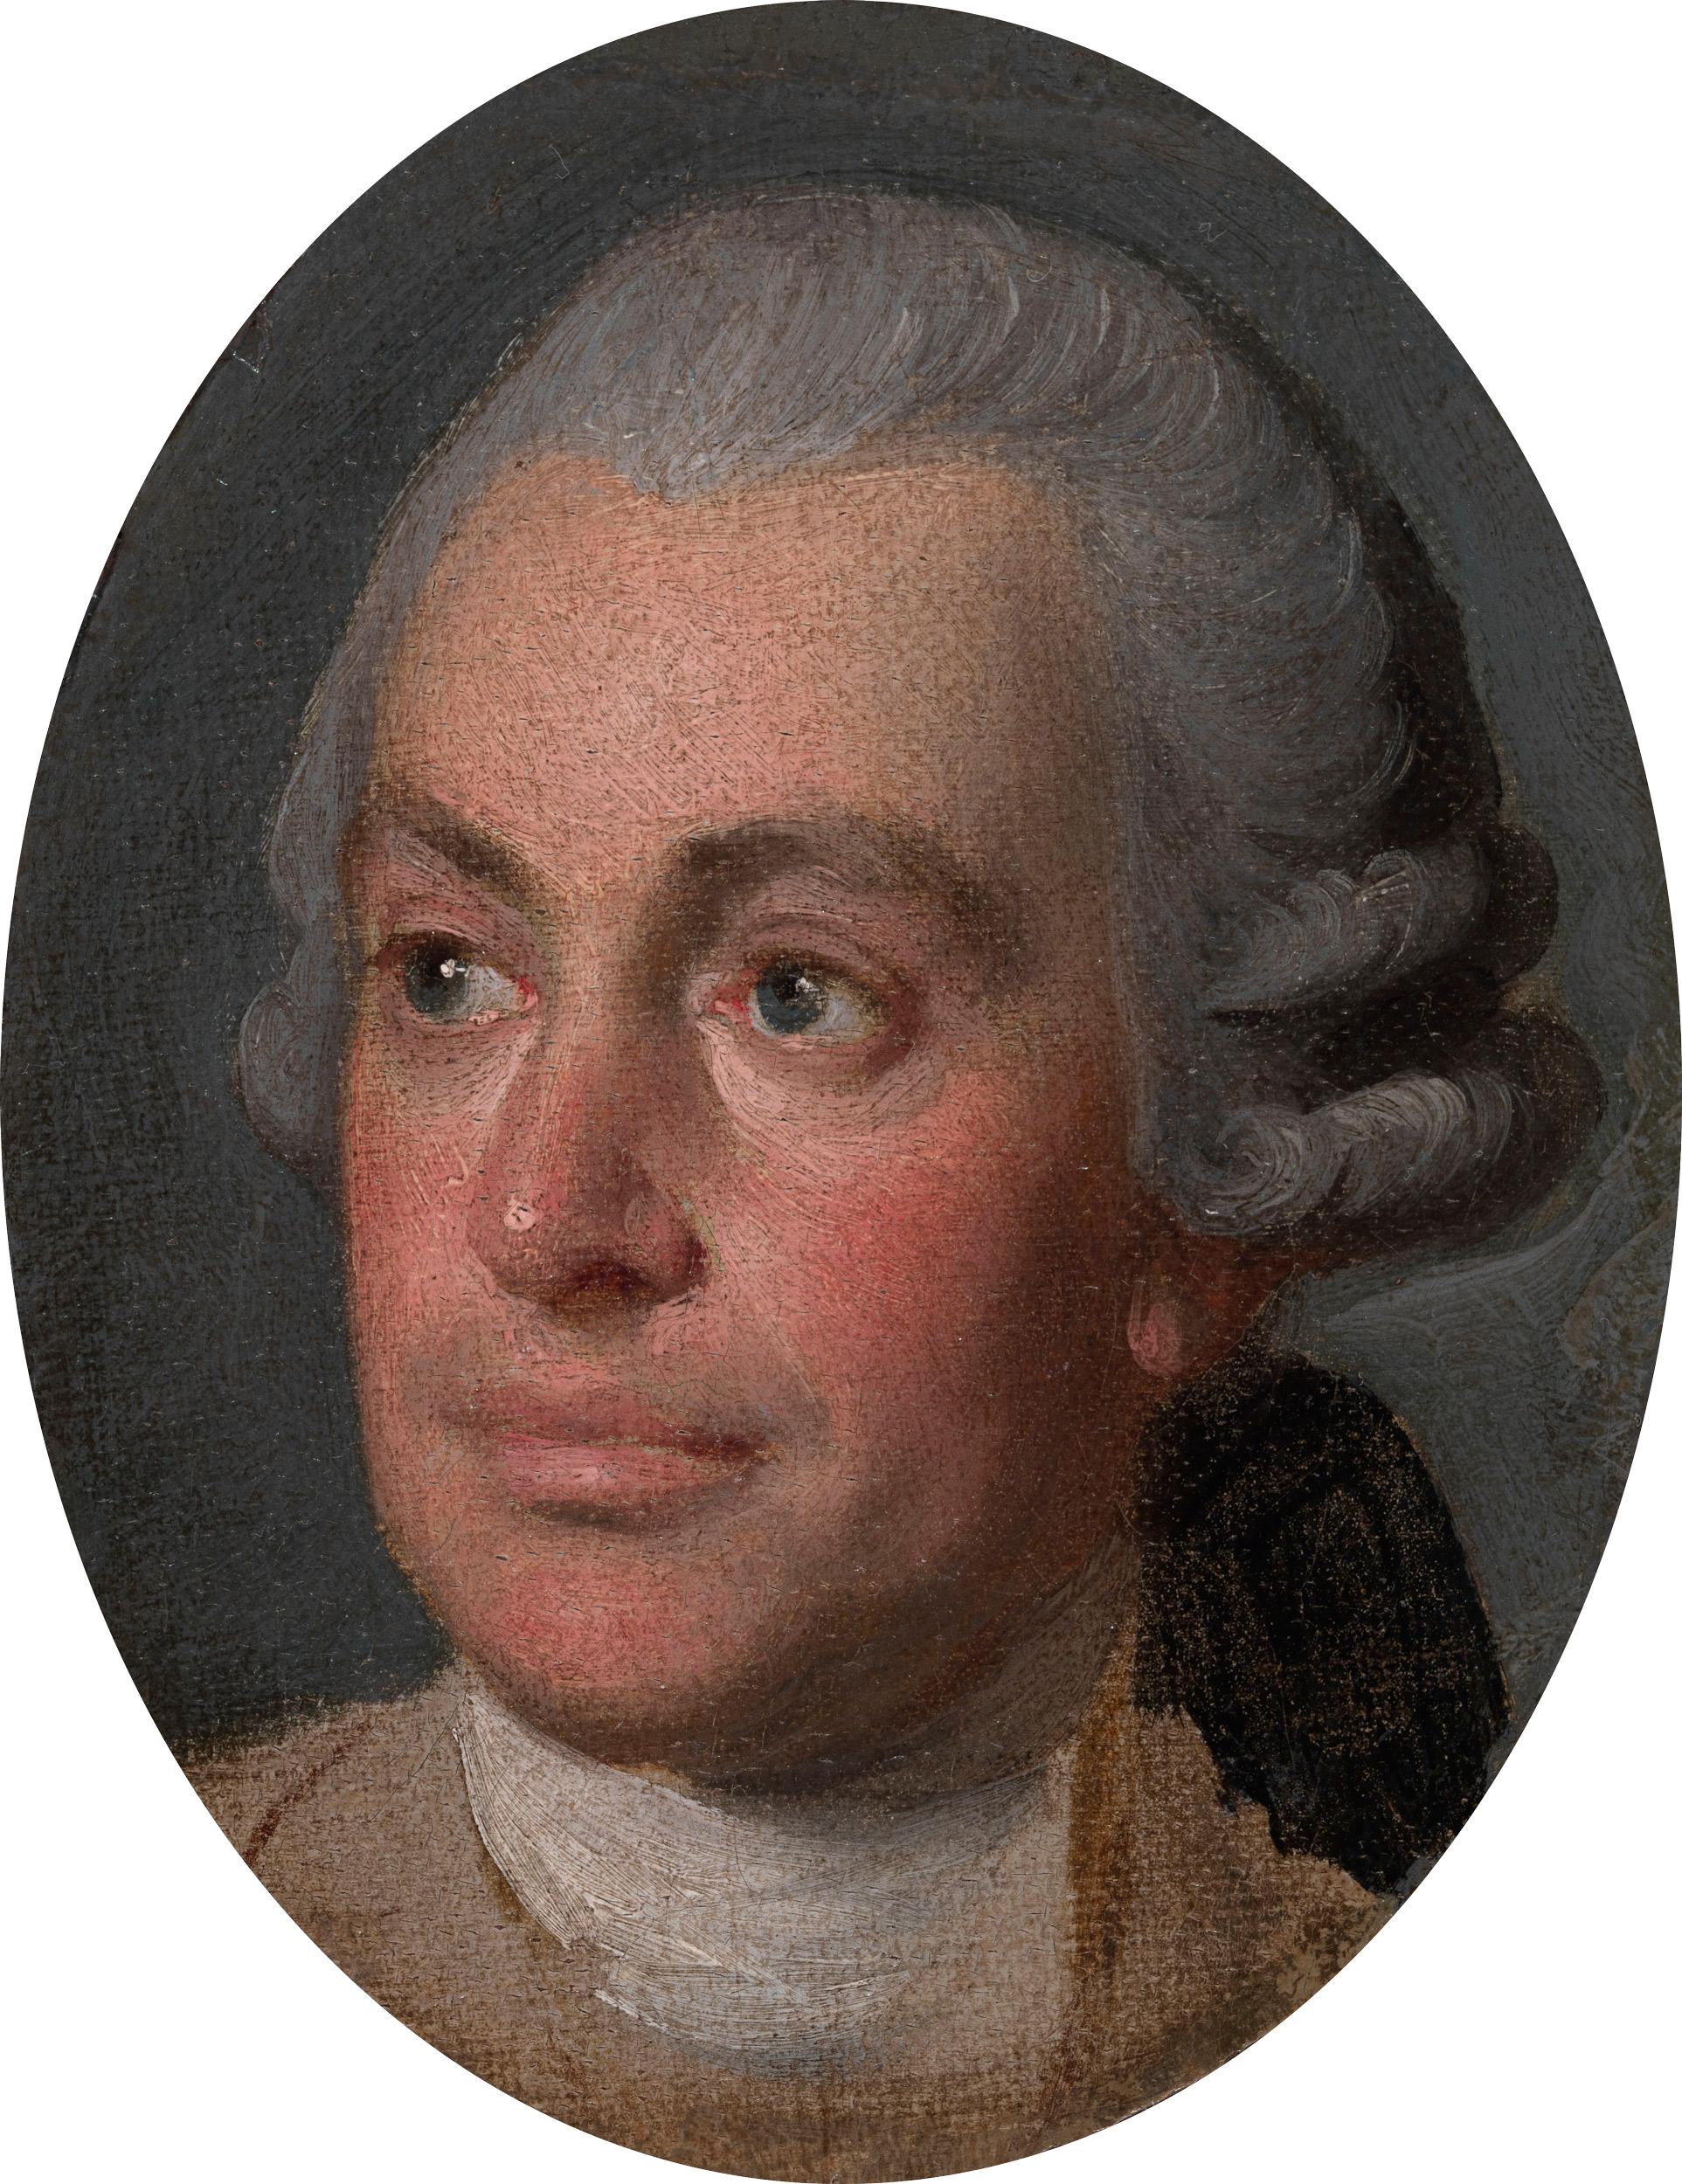 Porträt des Malers Nathaniel Dance aus dem 18. Jahrhundert – Painting von Johan Zoffany